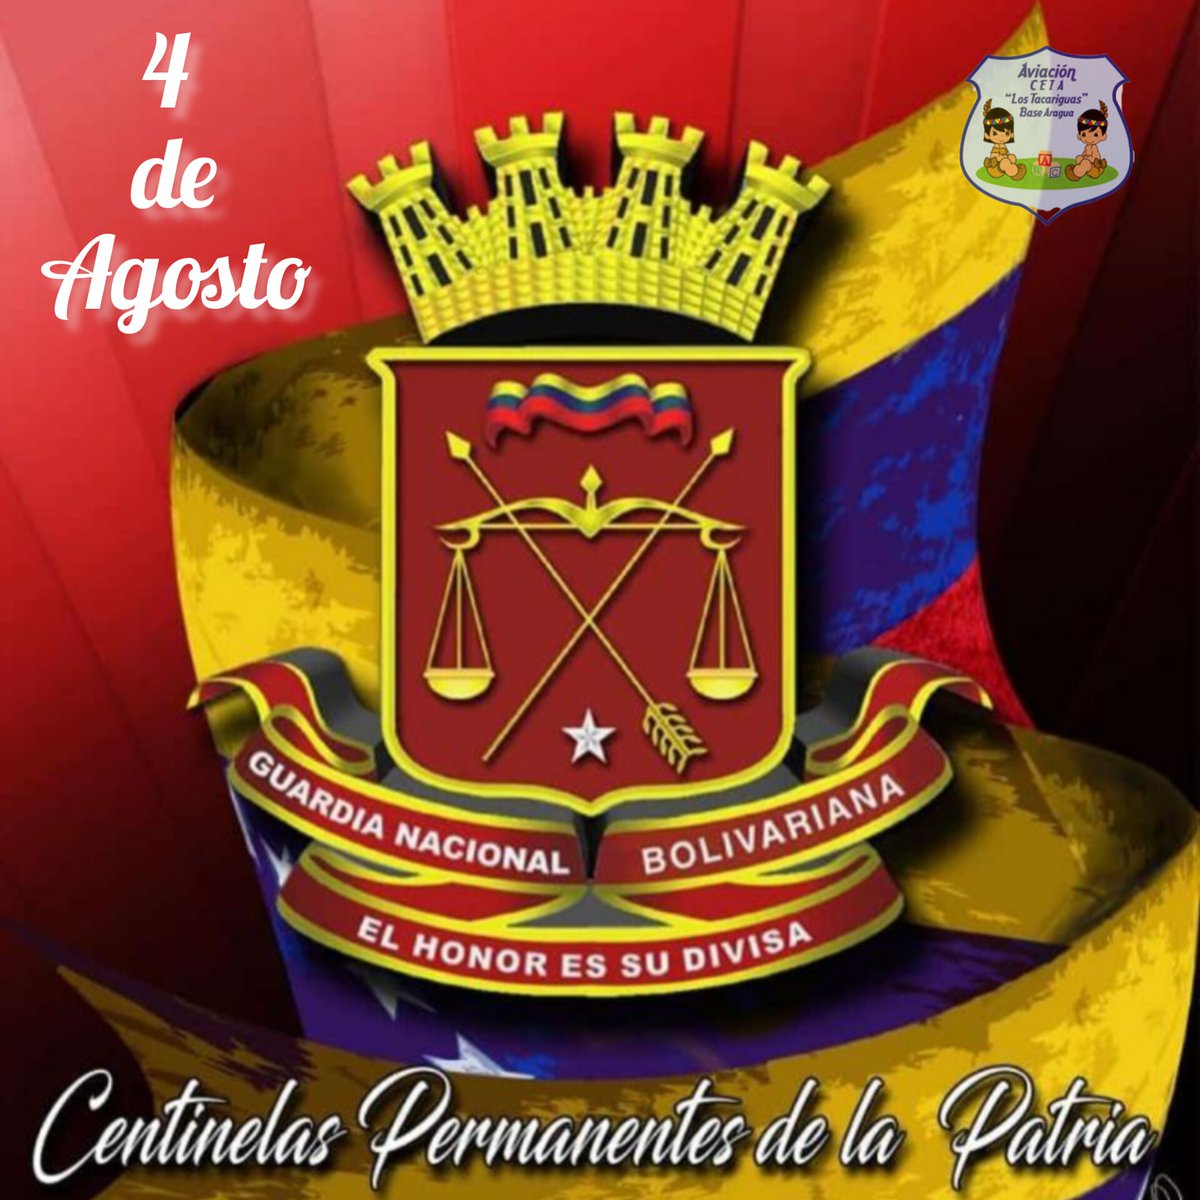 #4Ago, Día de la Guardia Nacional Bolivariana Felicidades por su Aniversario nro 86 'Centinelas Permanentes de la Patria' 🇻🇪 
🇻🇪✈️🧒🏻👧🏻🚁🇻🇪
@AmbFanb 
@GAeroespacial 
@educacion_amb  
#EnAlasVenceremos
#FANB